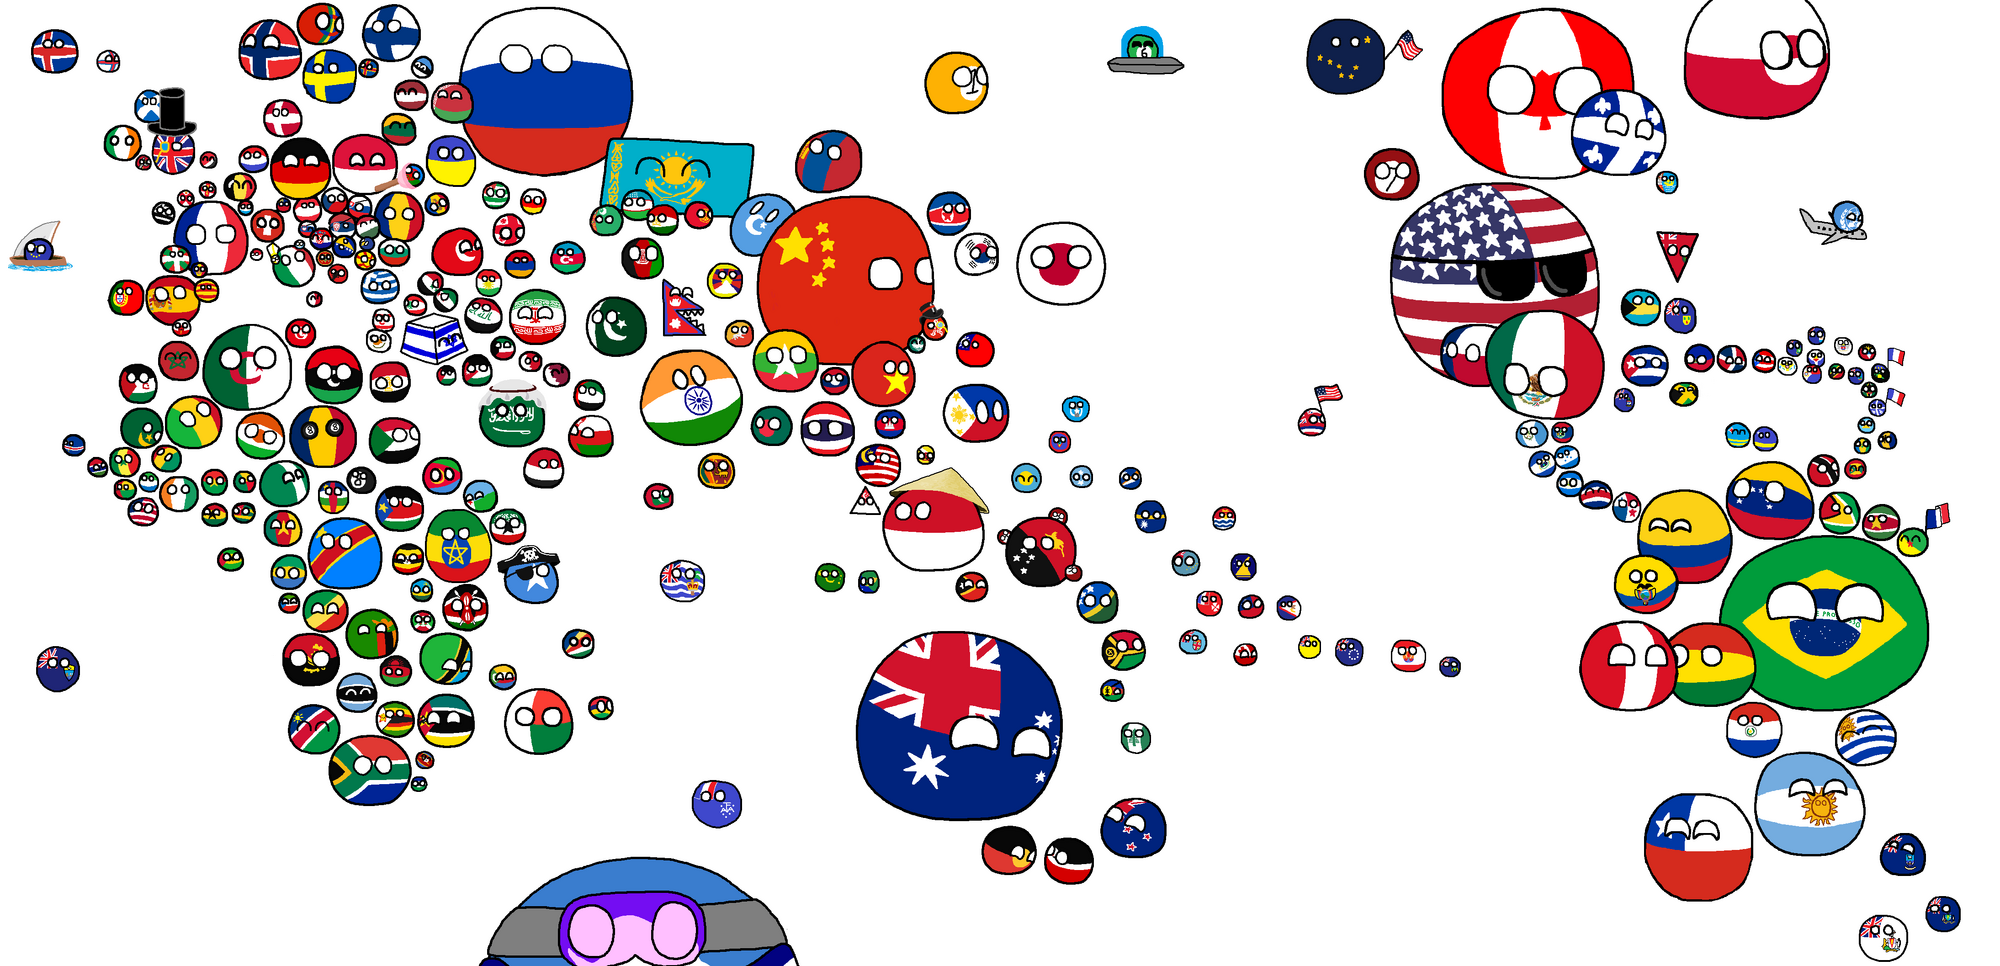 Игры шарики страны. Countryballs World Map. Countryballs European Union. Polandball World карты. Шары флаги стран.